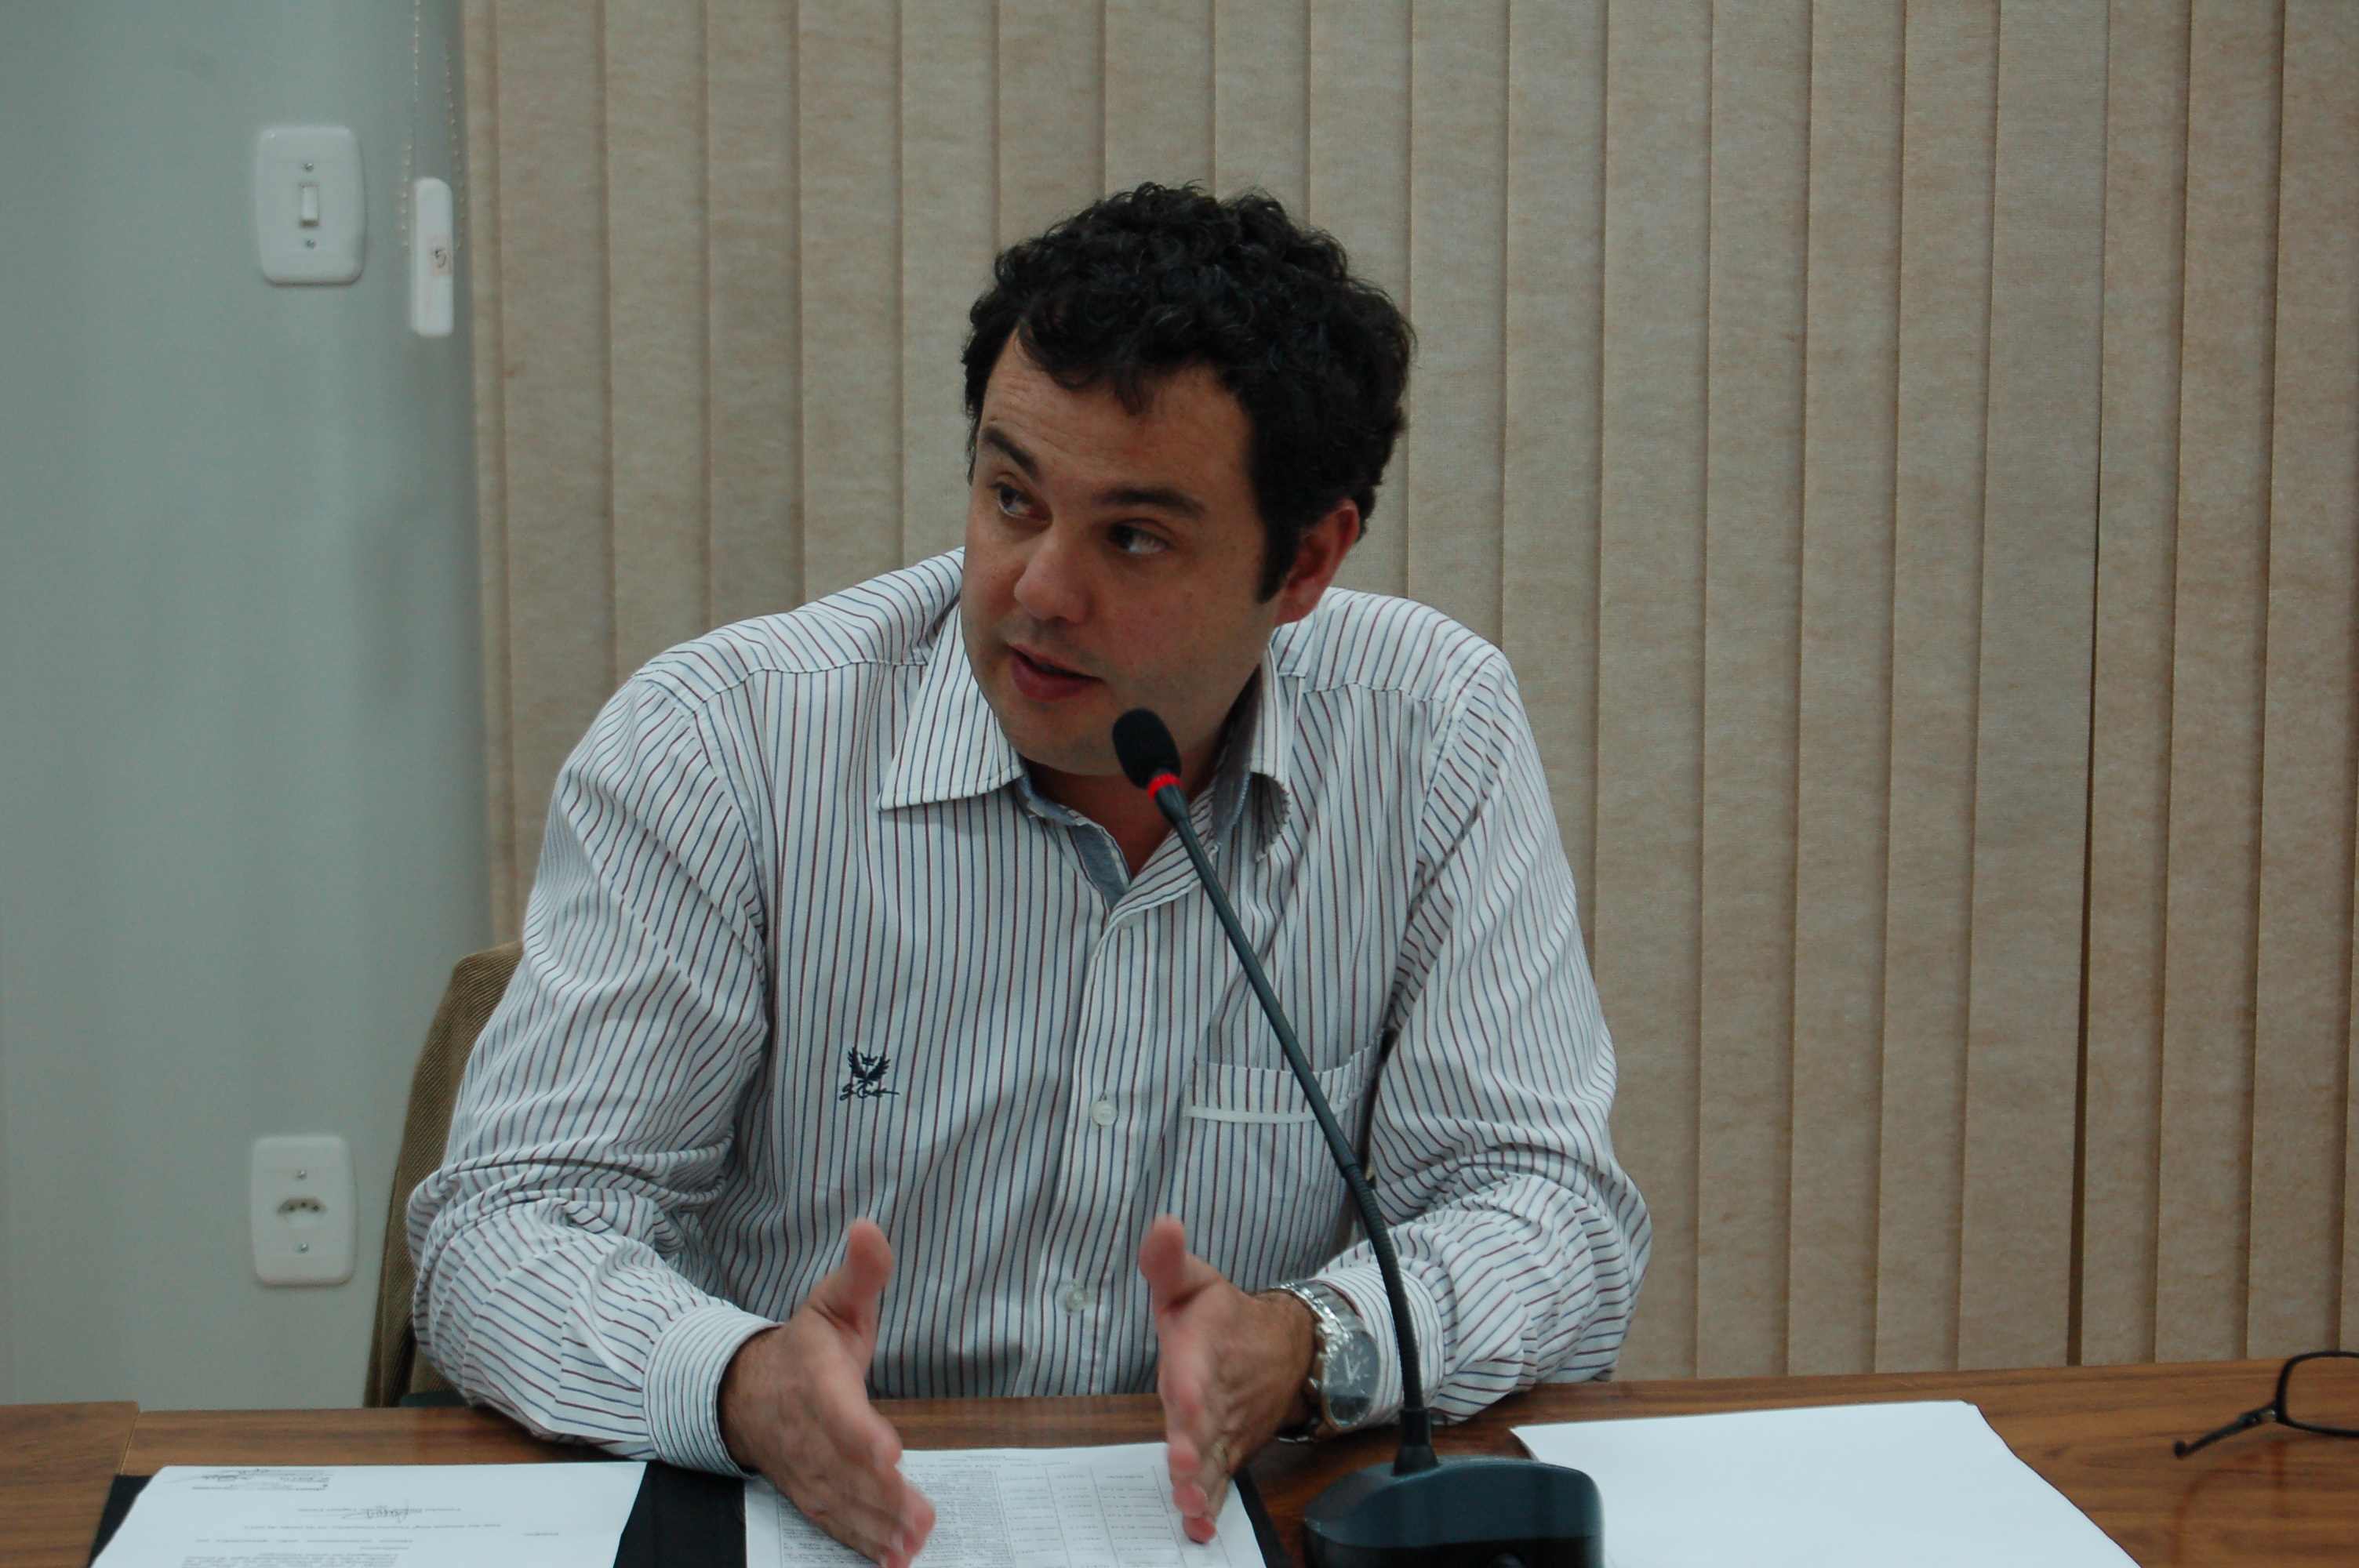 Vereador Dinarte Farias obtêm aprovação unânime em Pedido de Informações sobre limpeza de passeios públicos e de terrenos particulares